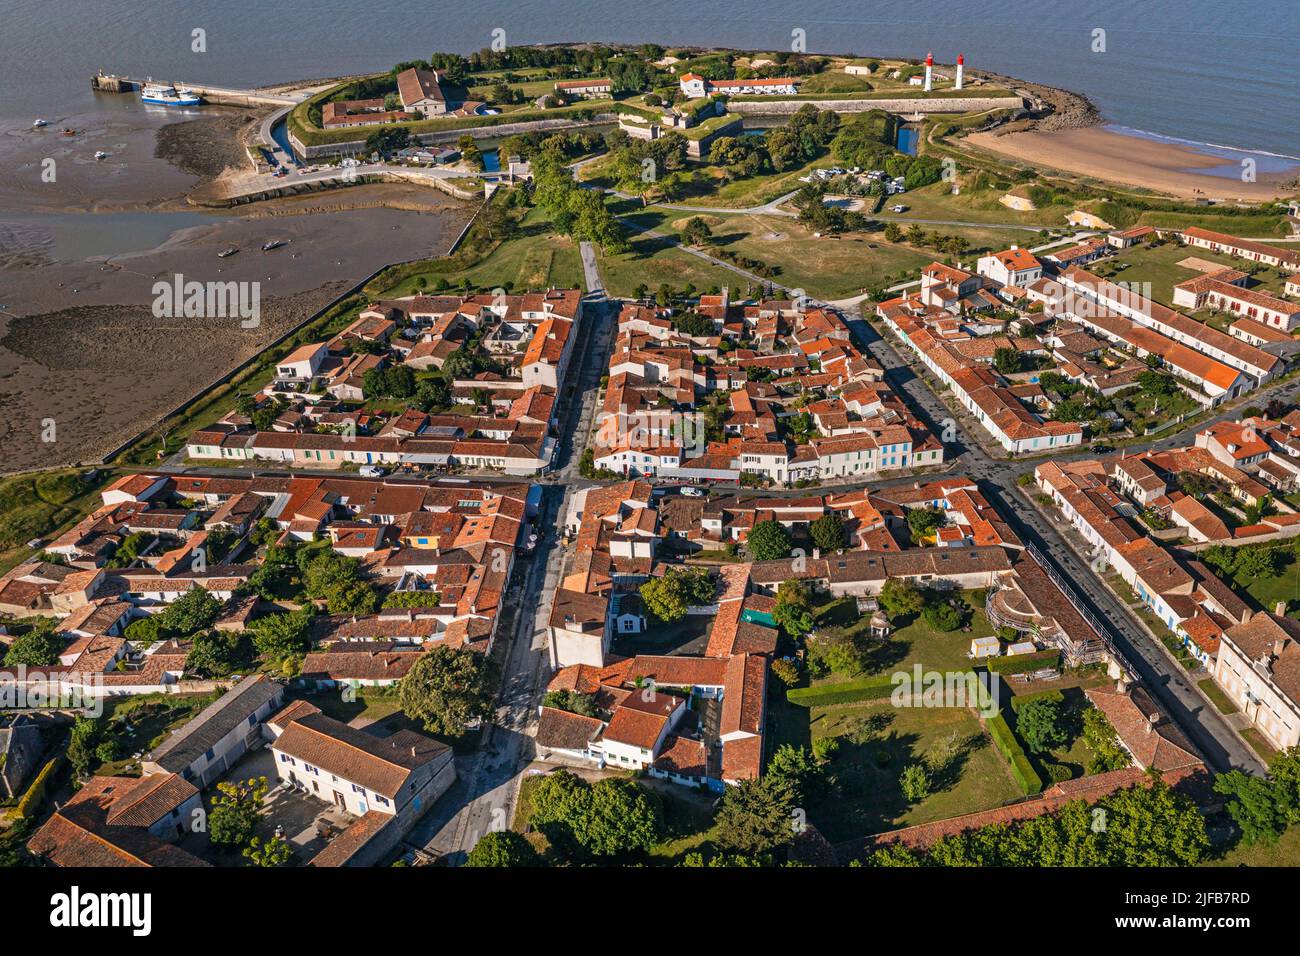 Francia, Charente-Maritime, Ile d'Aix (Aix Island), el pueblo también llamado el bourg y el fuerte de la Rade en el fondo (vista aérea) Foto de stock